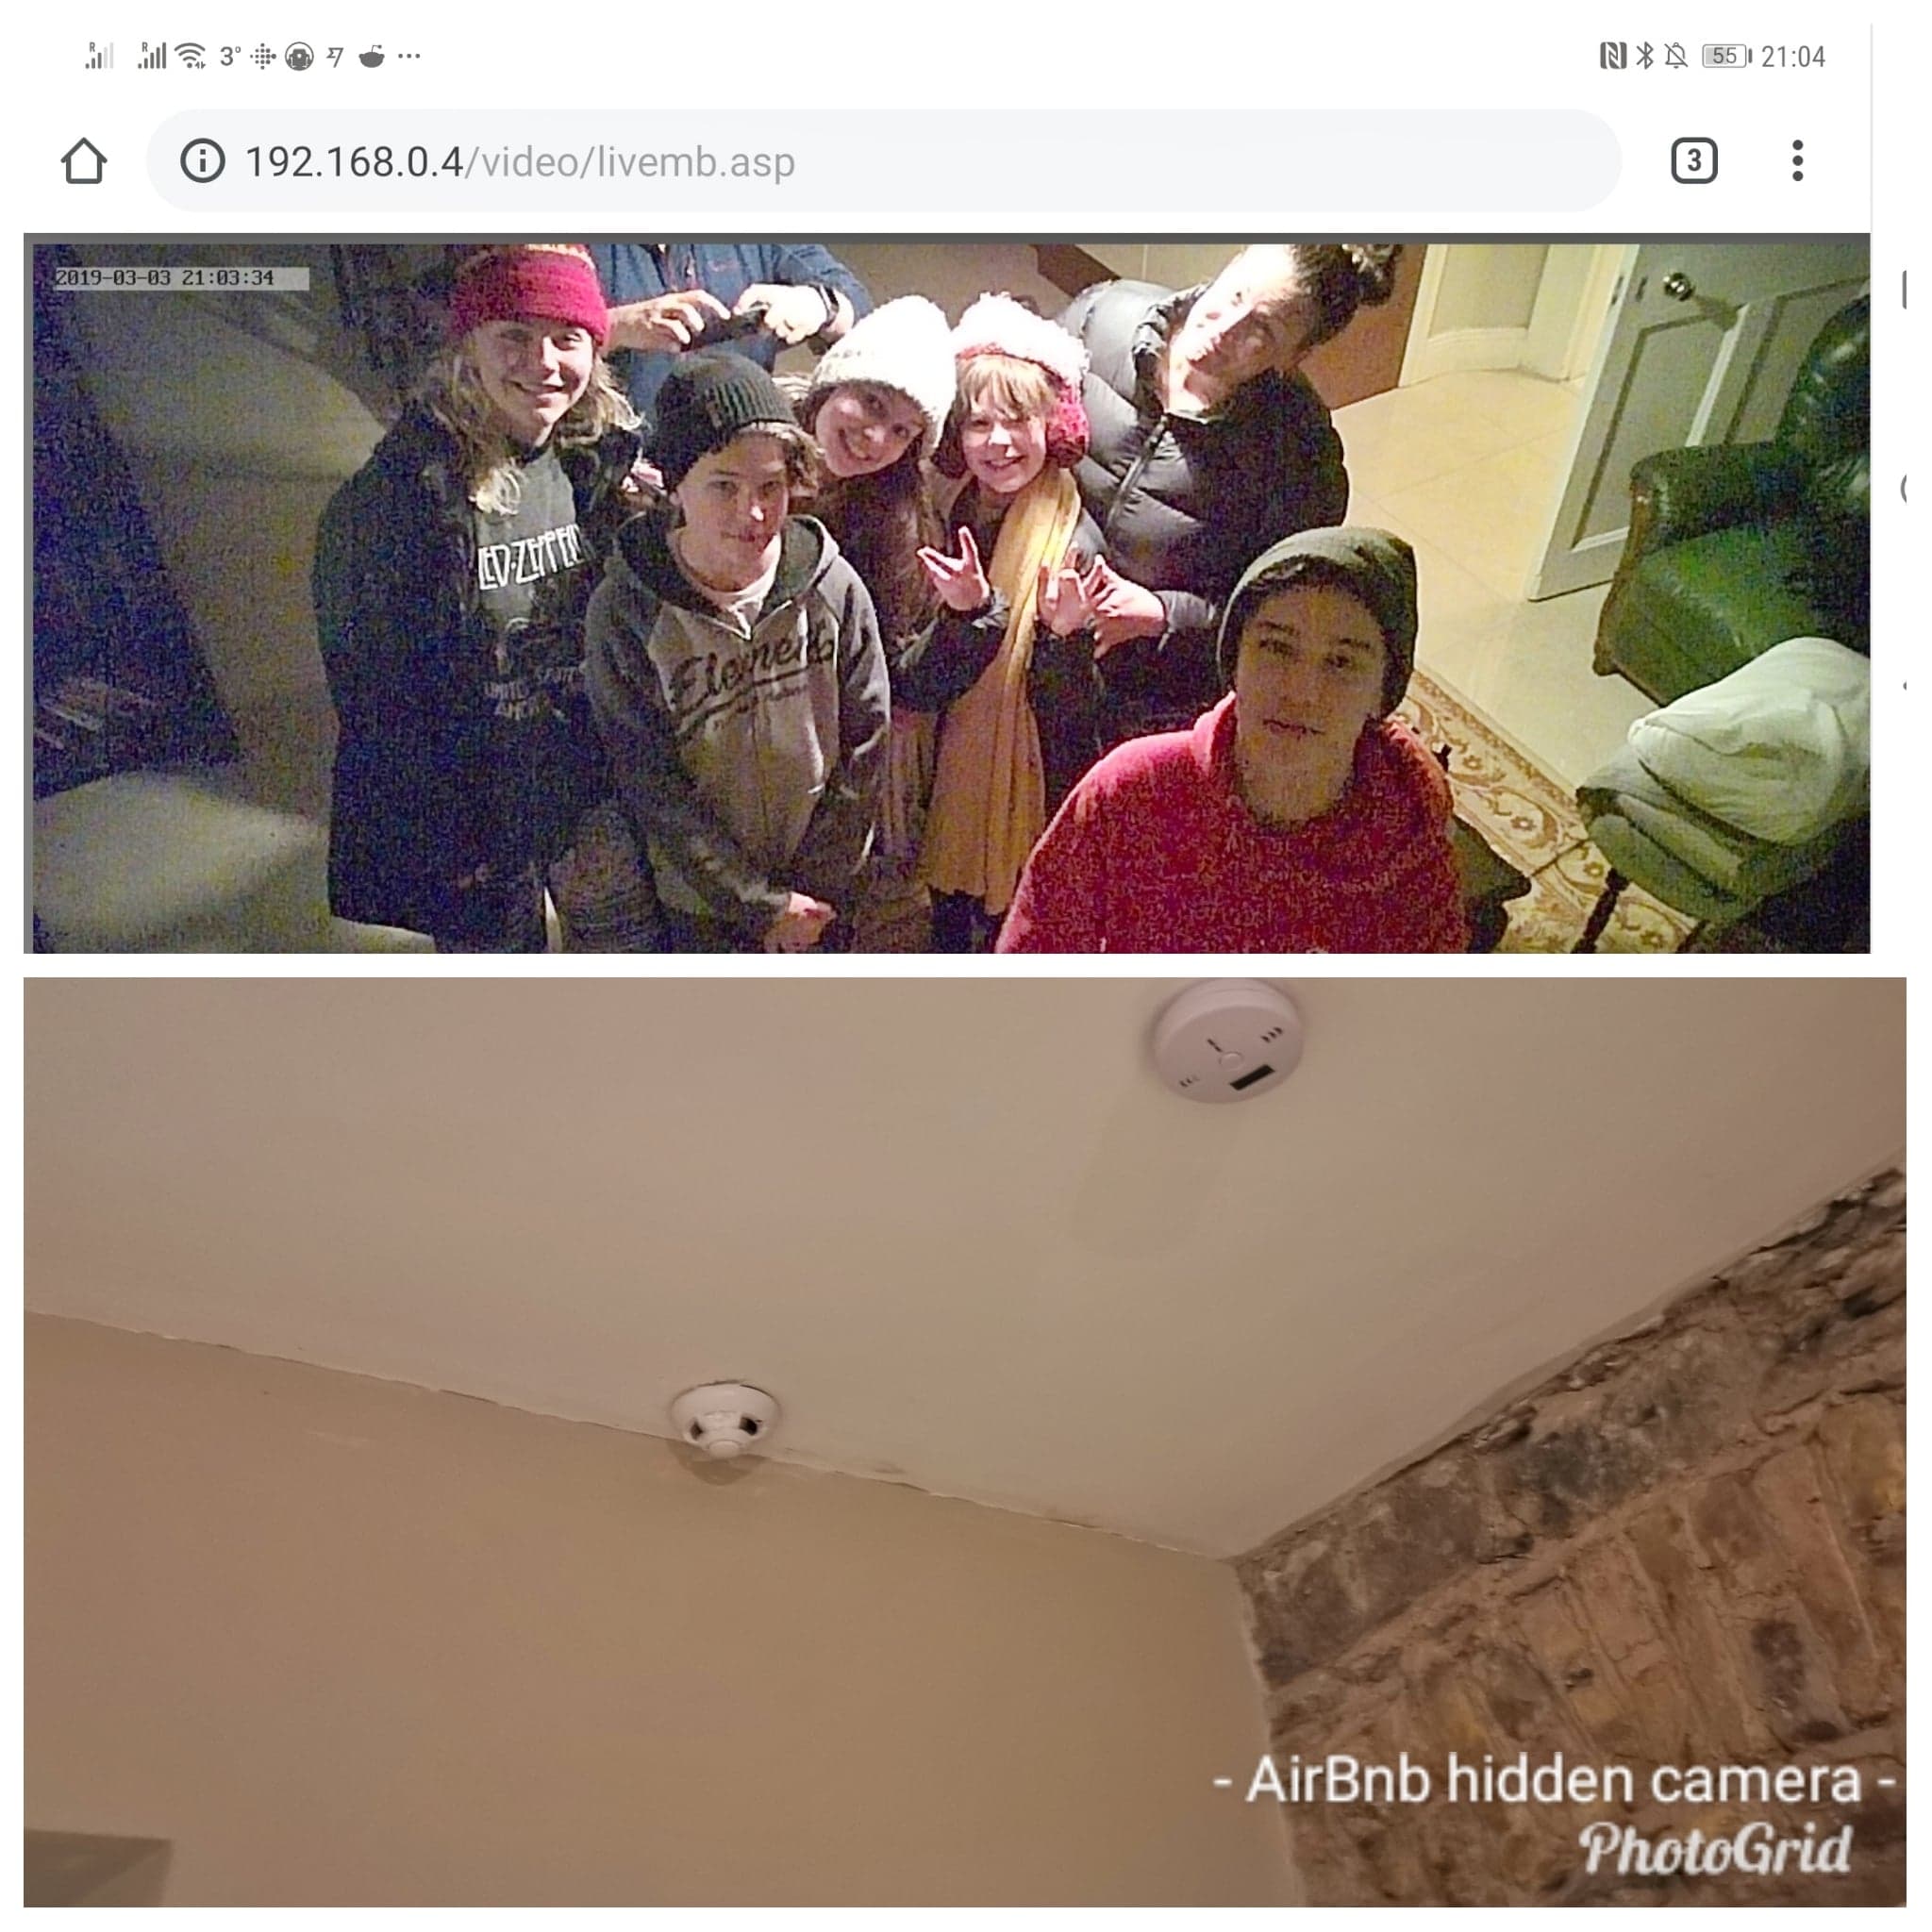 Electric B. reccomend hidden camera airbnb